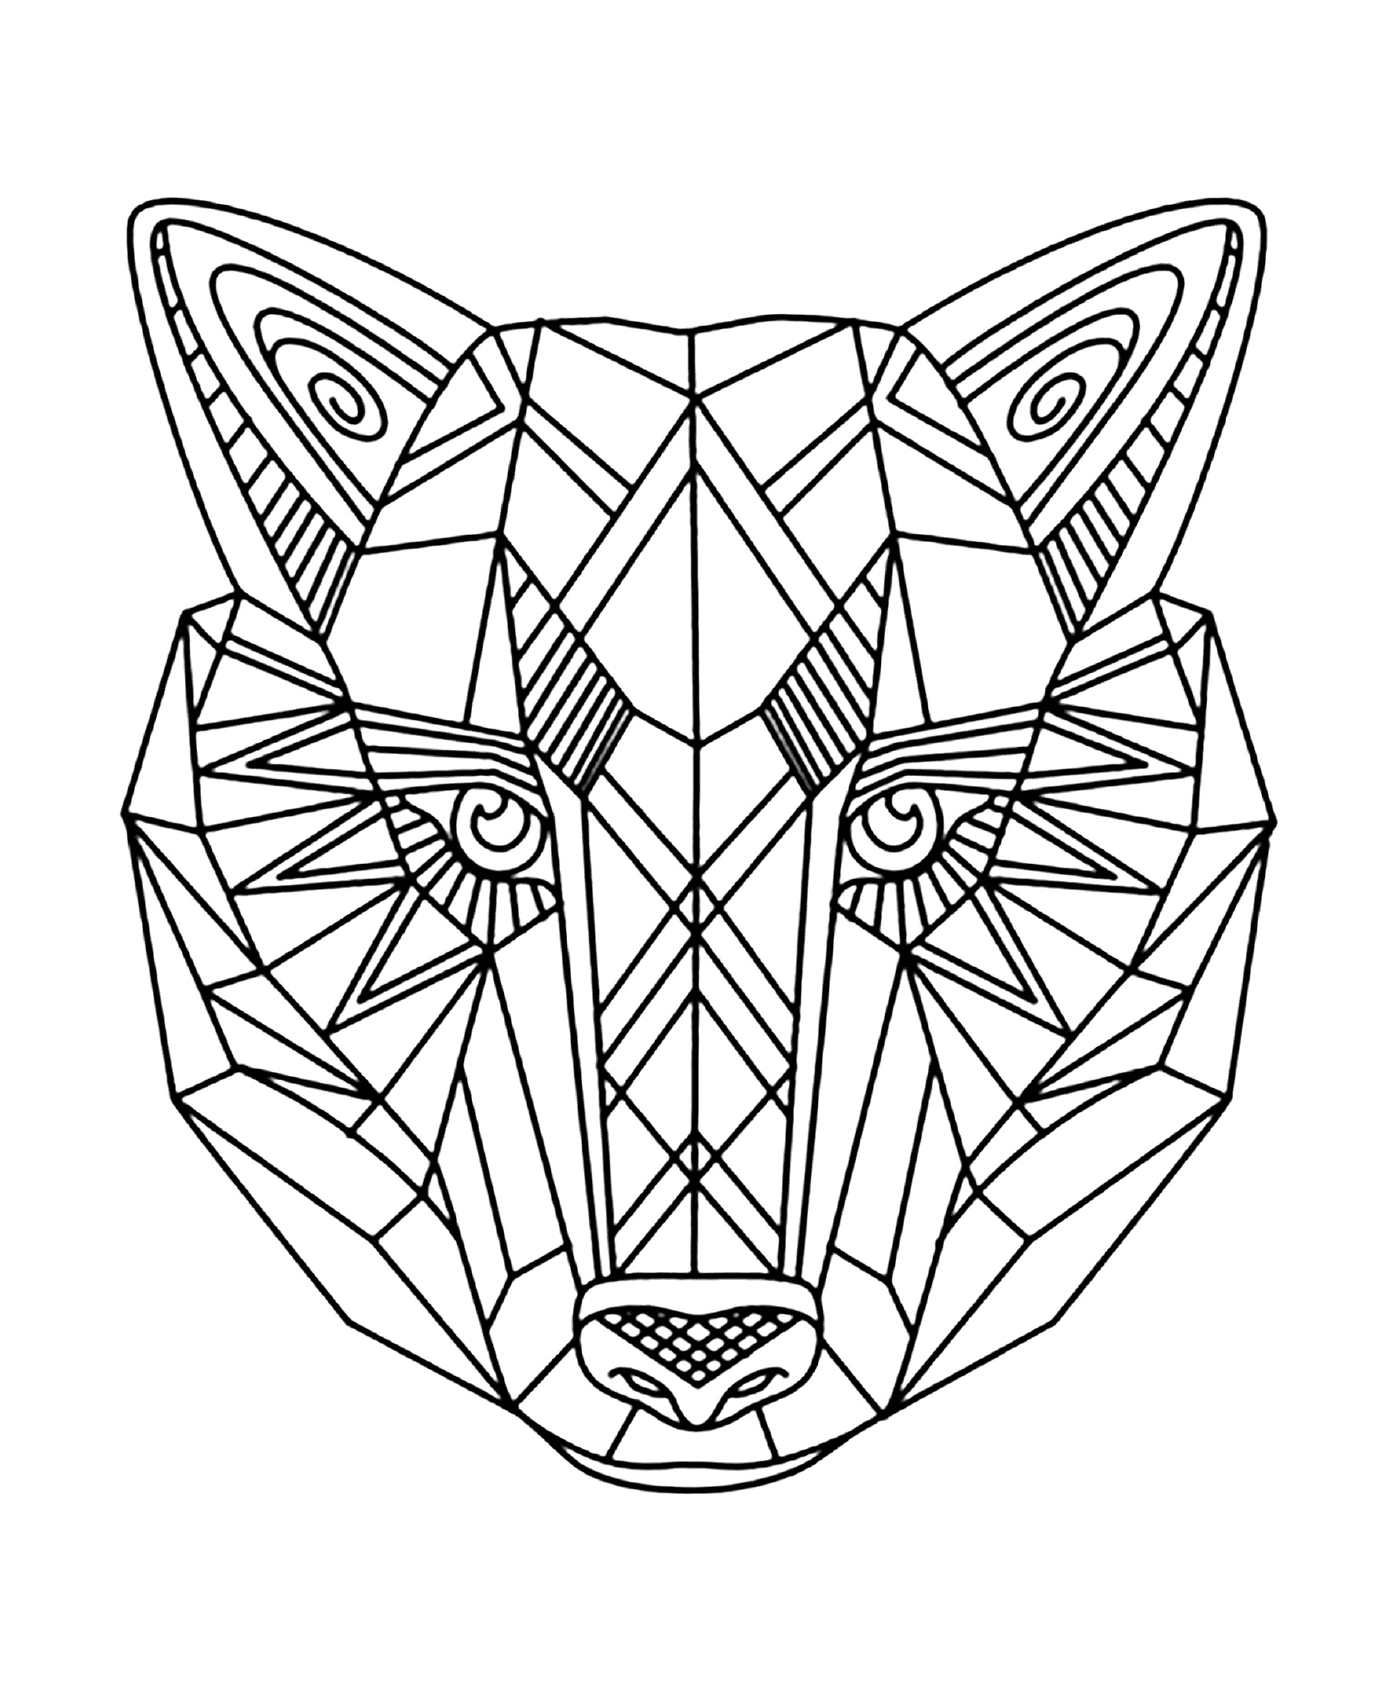  Animal com um padrão geométrico no rosto 